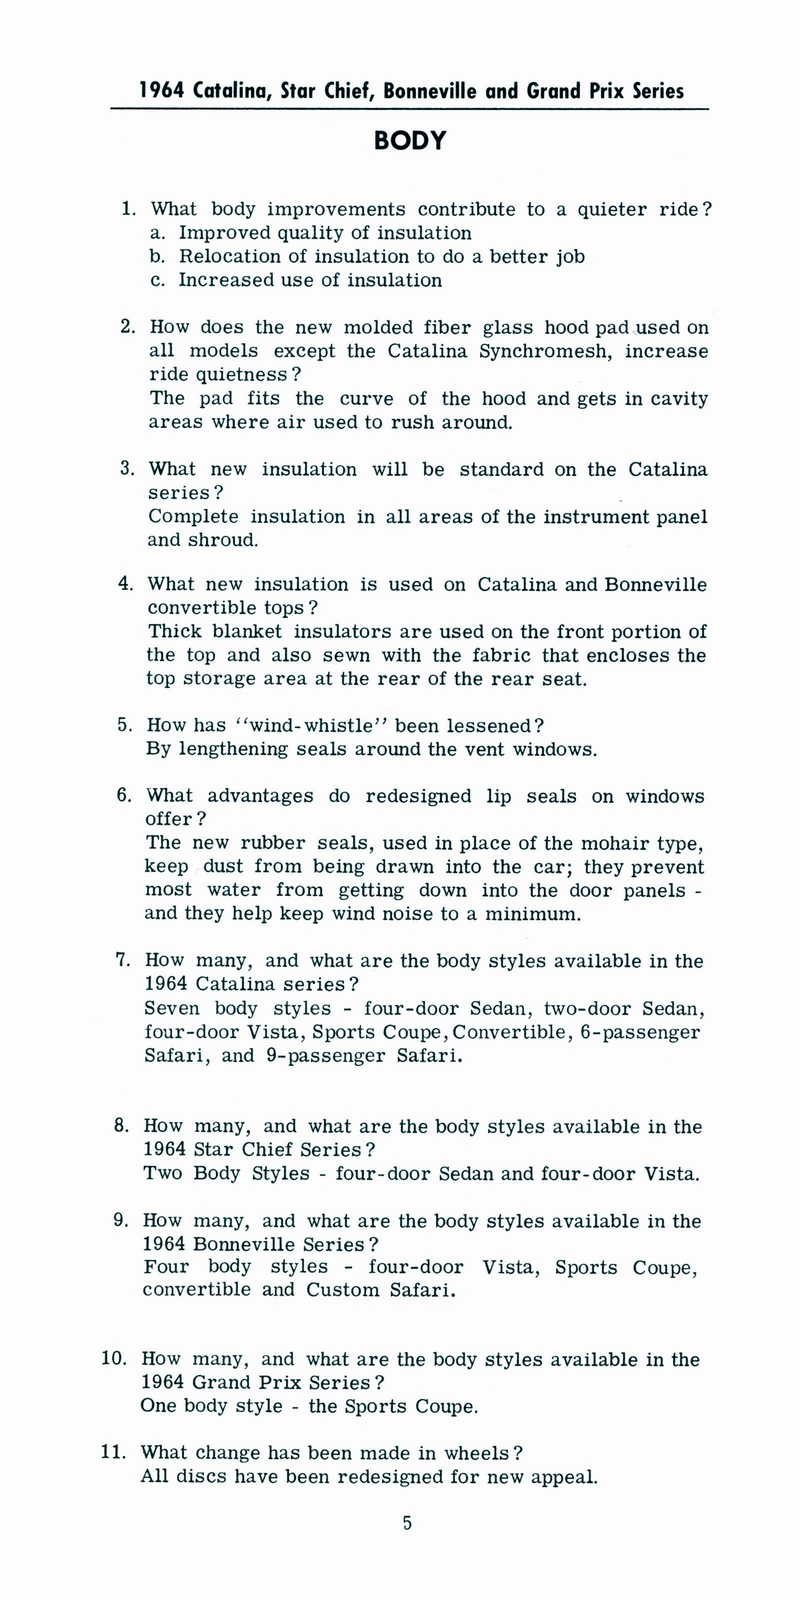 n_1964 Pontiac Facts Booklet-07.jpg